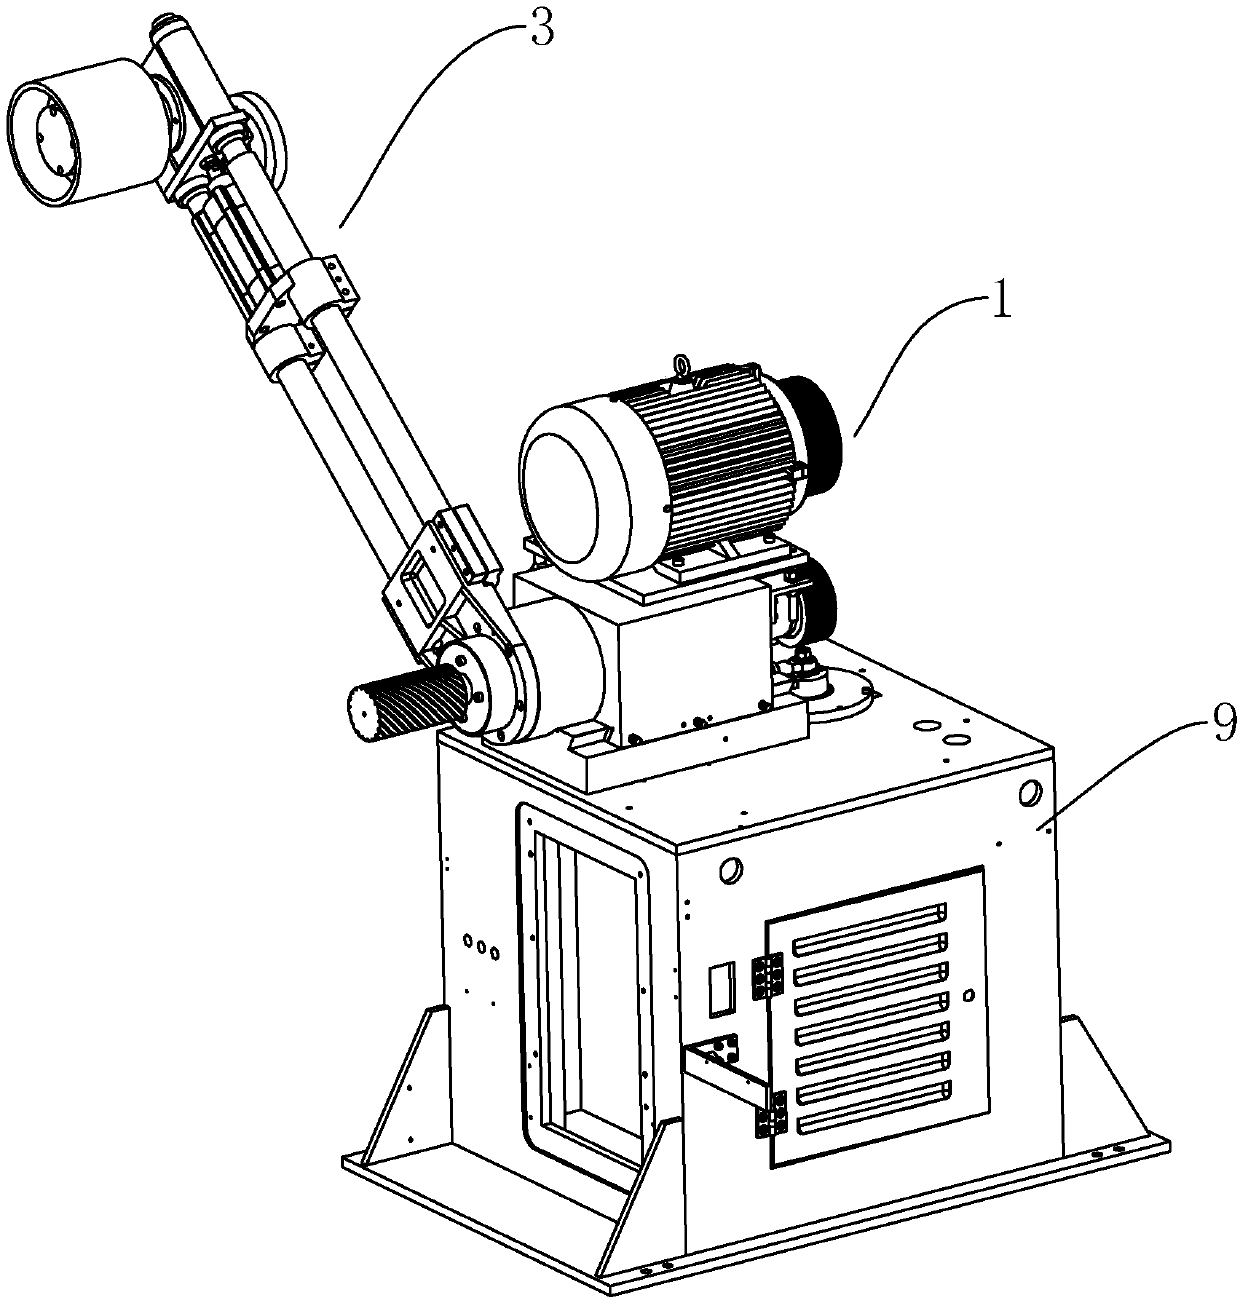 Grinding mechanism of abrasive belt grinder